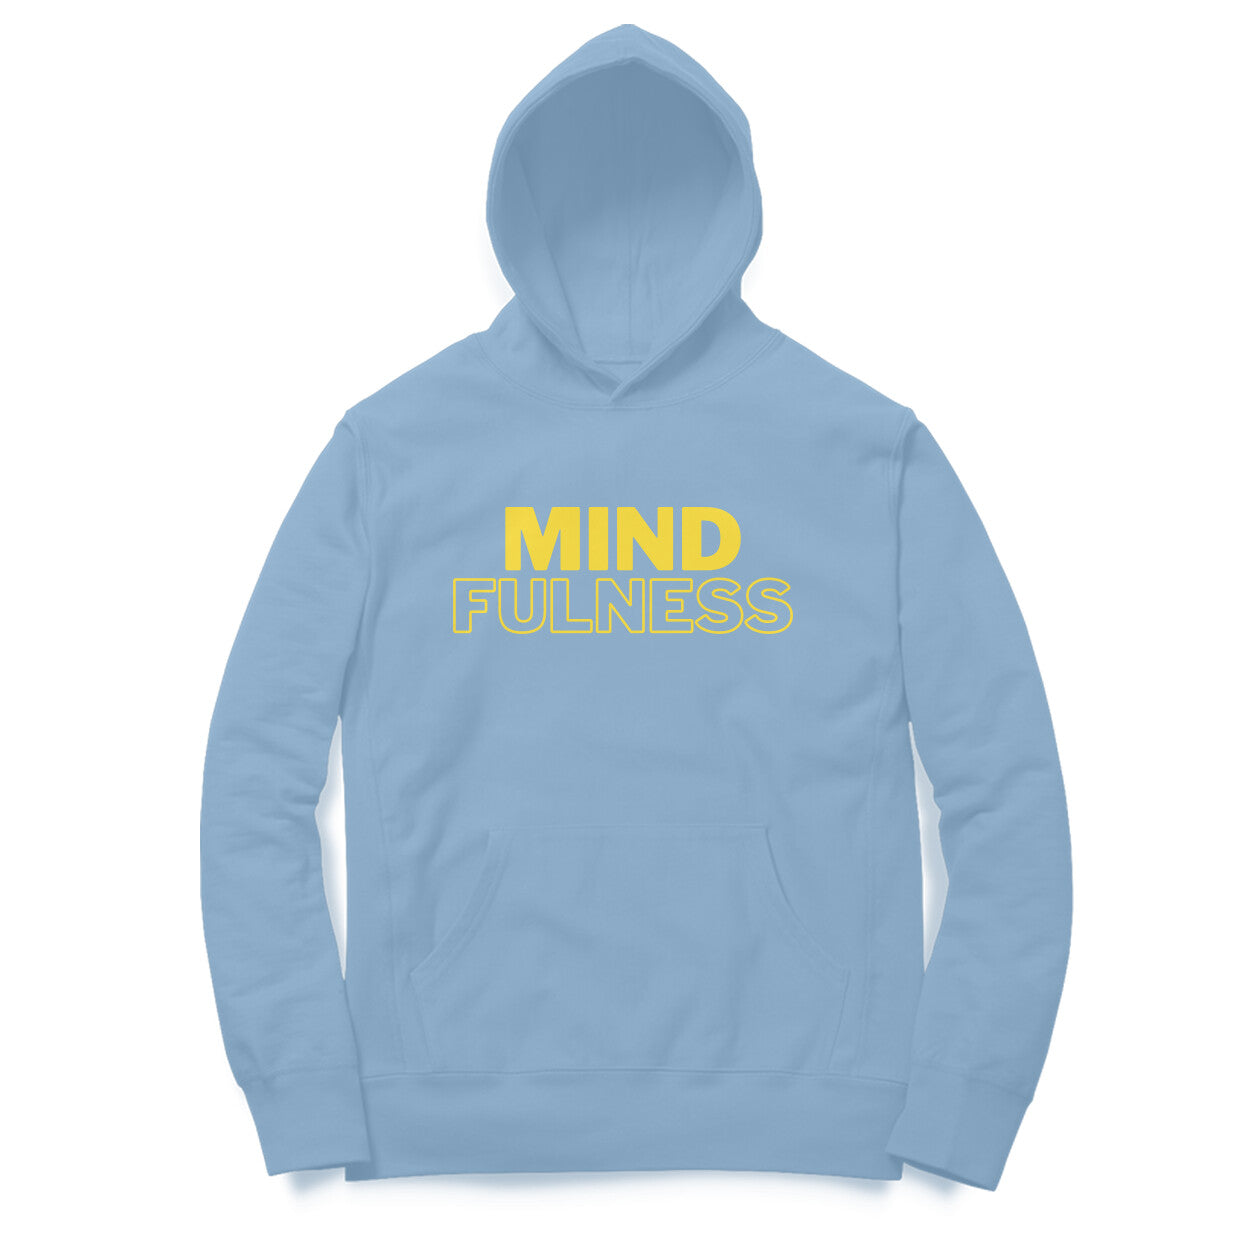 Mindfulness - Unisex Hoodie